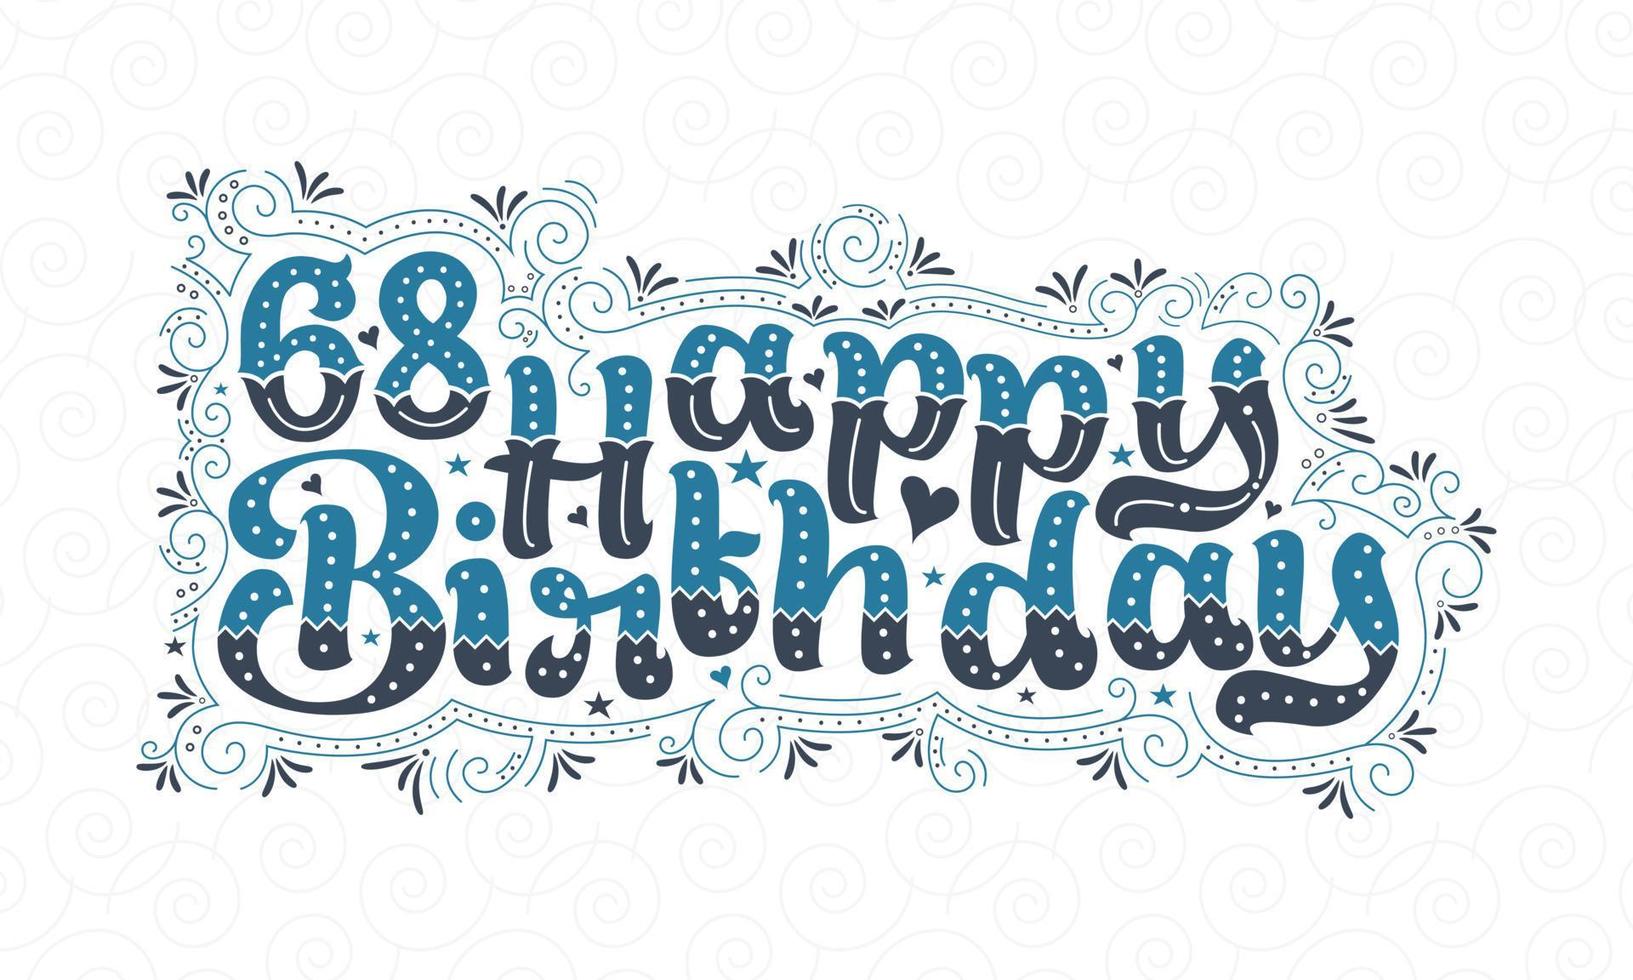 68e lettrage de joyeux anniversaire, 68 ans d'anniversaire belle conception de typographie avec des points, des lignes et des feuilles bleus et noirs. vecteur